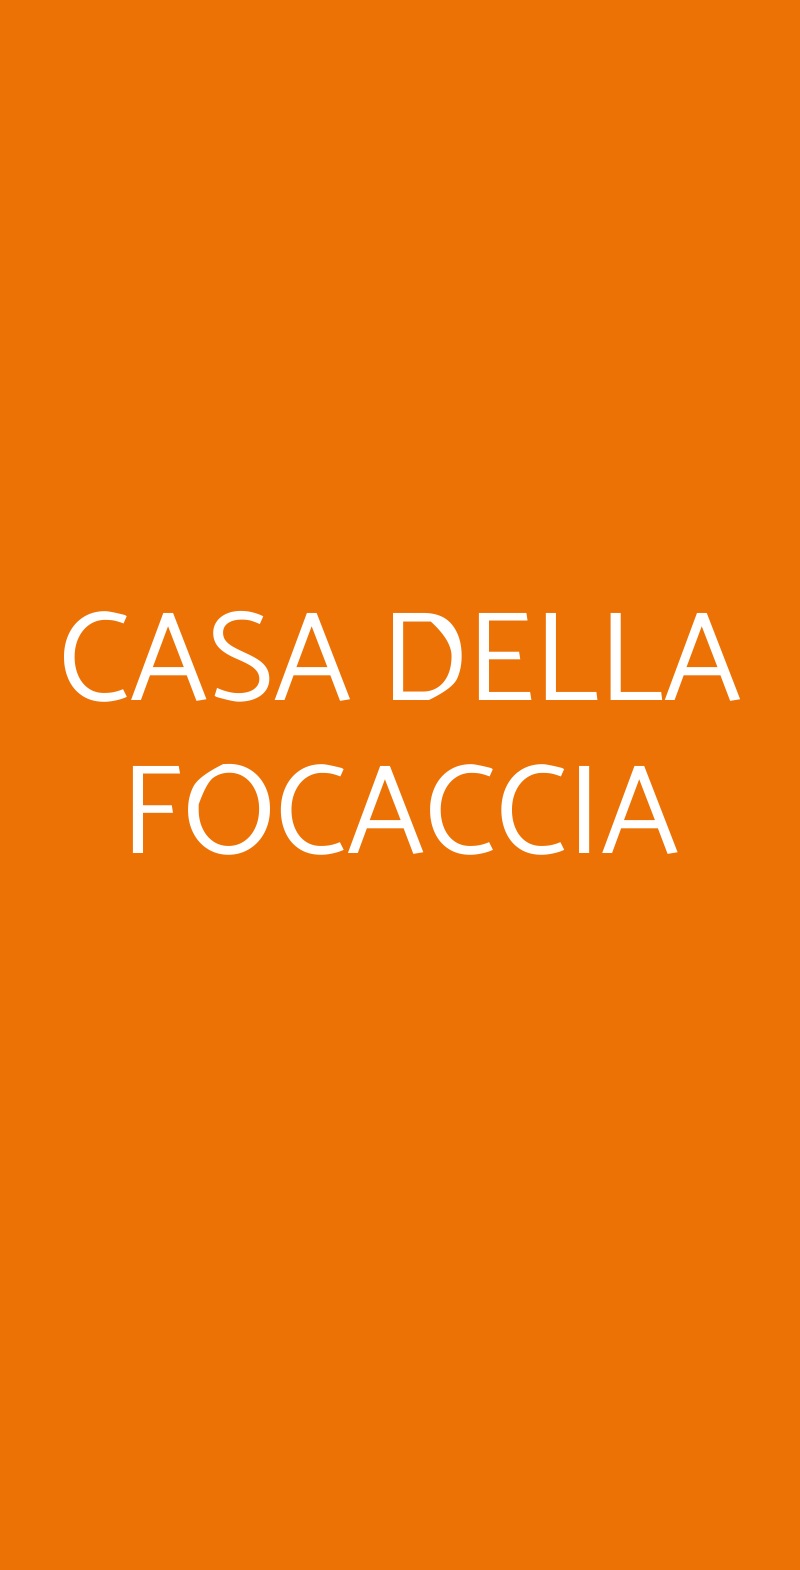 CASA DELLA FOCACCIA Milano menù 1 pagina